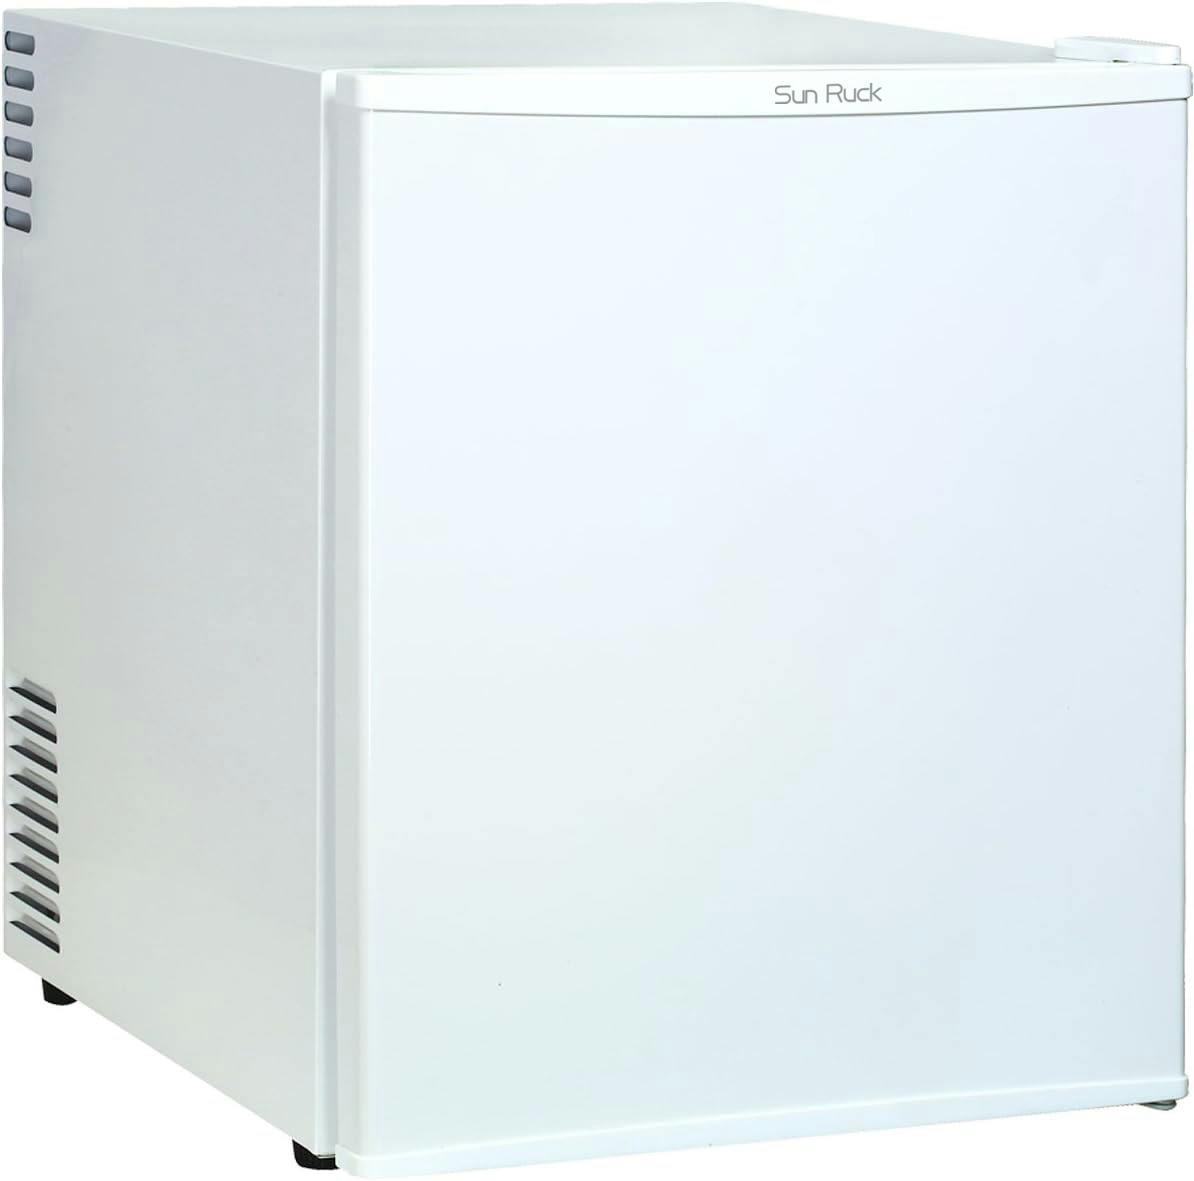 SunRuck 1ドア冷蔵庫 48L SR-R4805W ホワイト 小型 霜取り不要 静音 